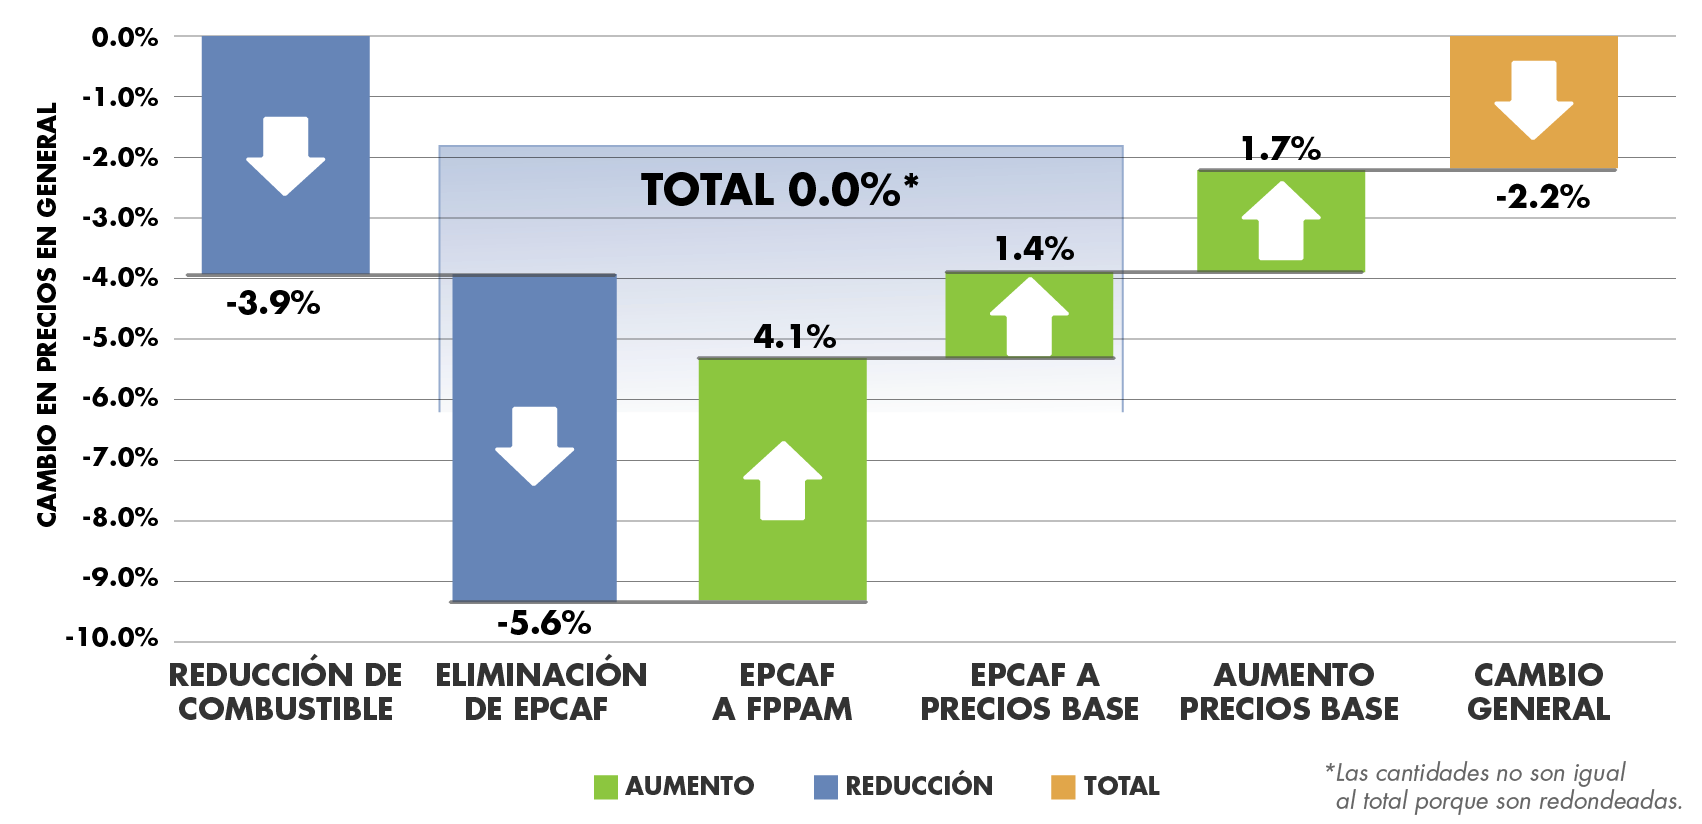 Gráfico que muestra los cambios porcentuales en los precios generales. -3,9% de disminución de combustible. -5,6% de disminución para eliminar EPCAF. Incremento de 4.1% para EPCAF a FPPAM. Aumento de 1,4% para EPCAF a base. 1.7% de aumento a la base. Cambio general: disminución del 2,2%.